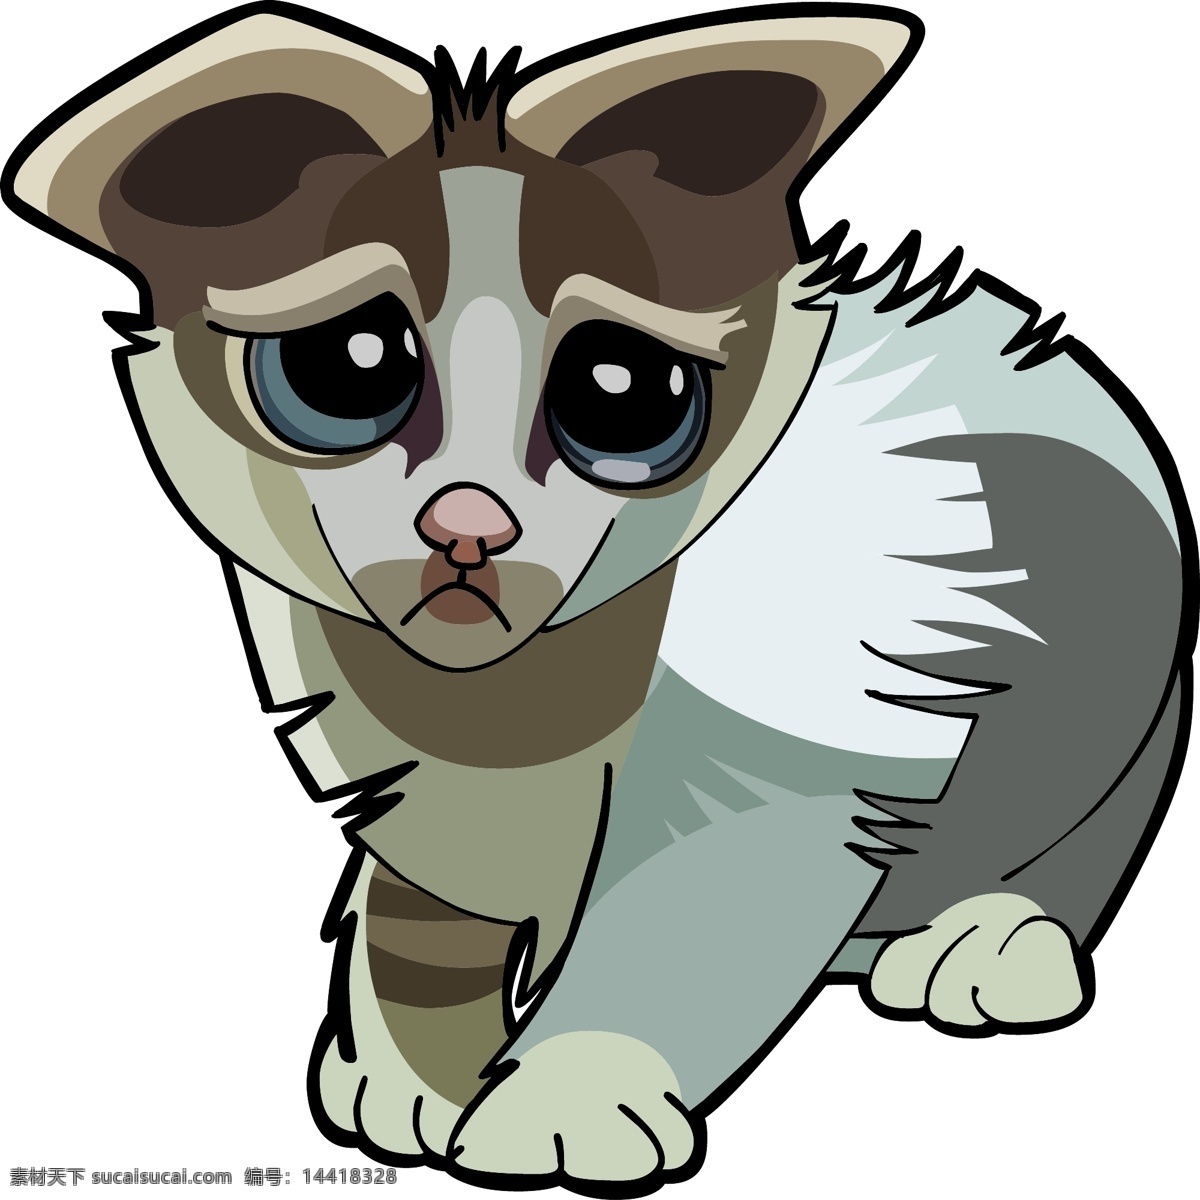 小猫 猫咪 卡通动物 小动物 可爱动物 卡通设计 野生动物 生物世界